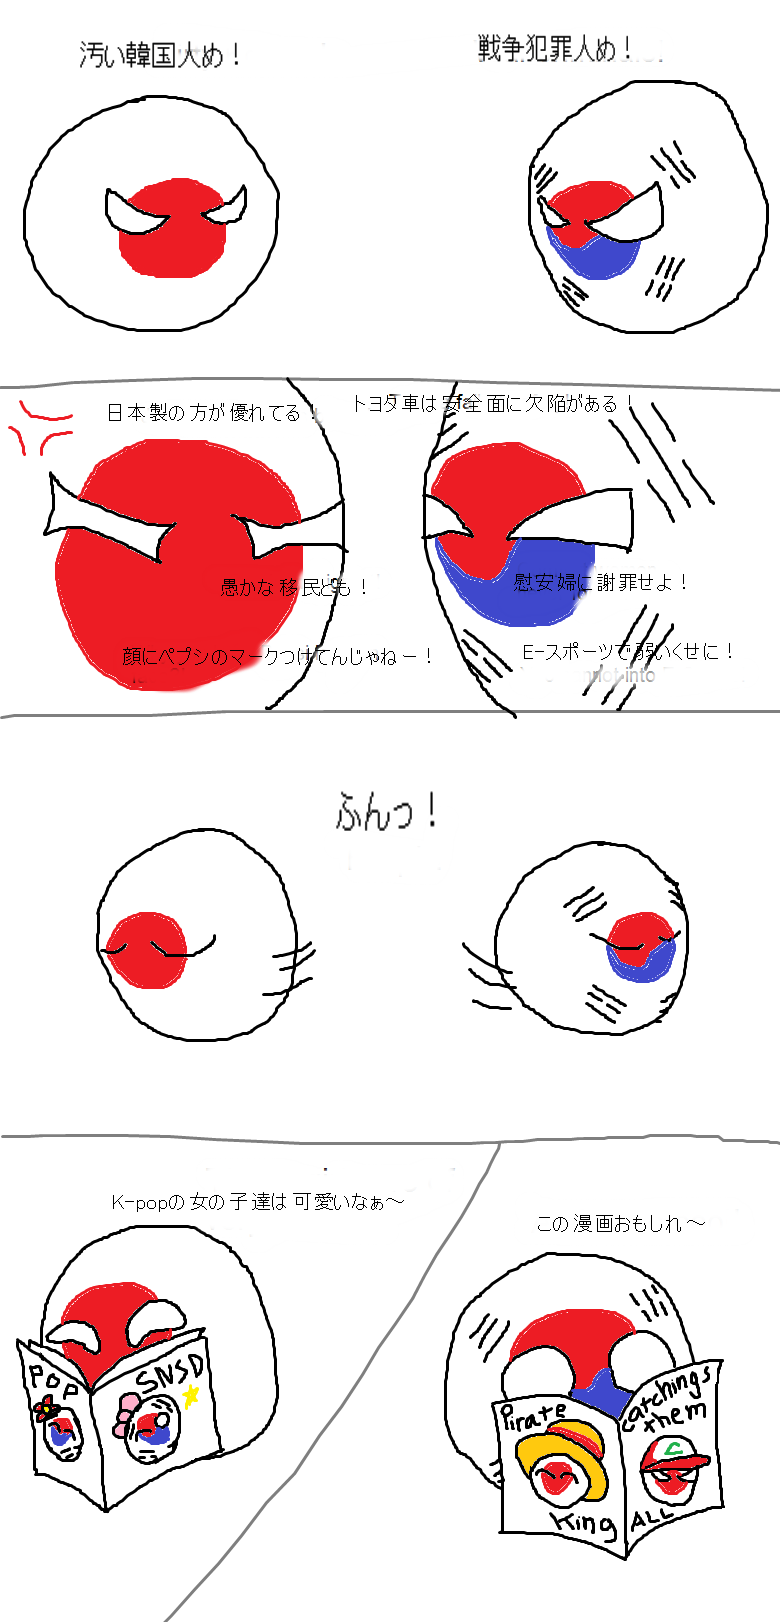 日本と韓国の関係 Korea Japan Relations ポーランドボールを楽しもう